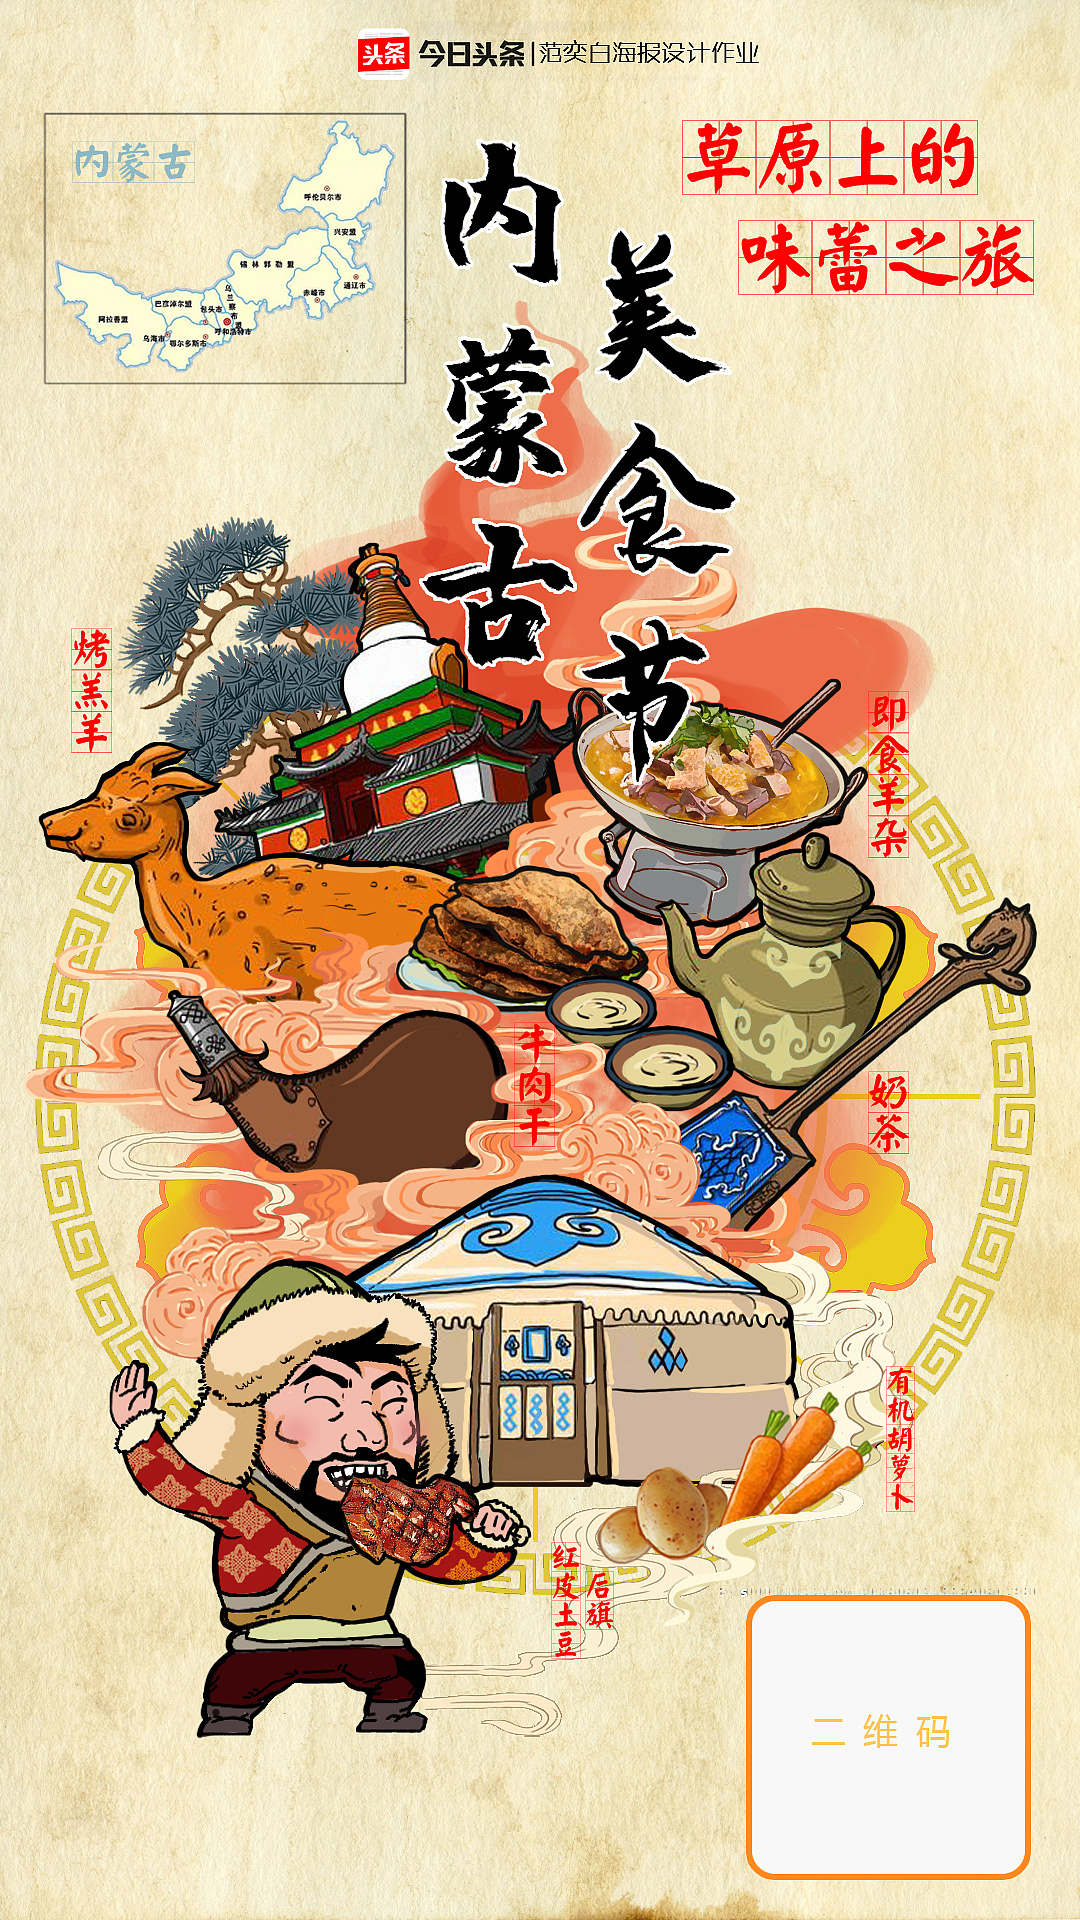 分享蒙古手绘插画-草原元素---蒙古元素 Mongolia Elements